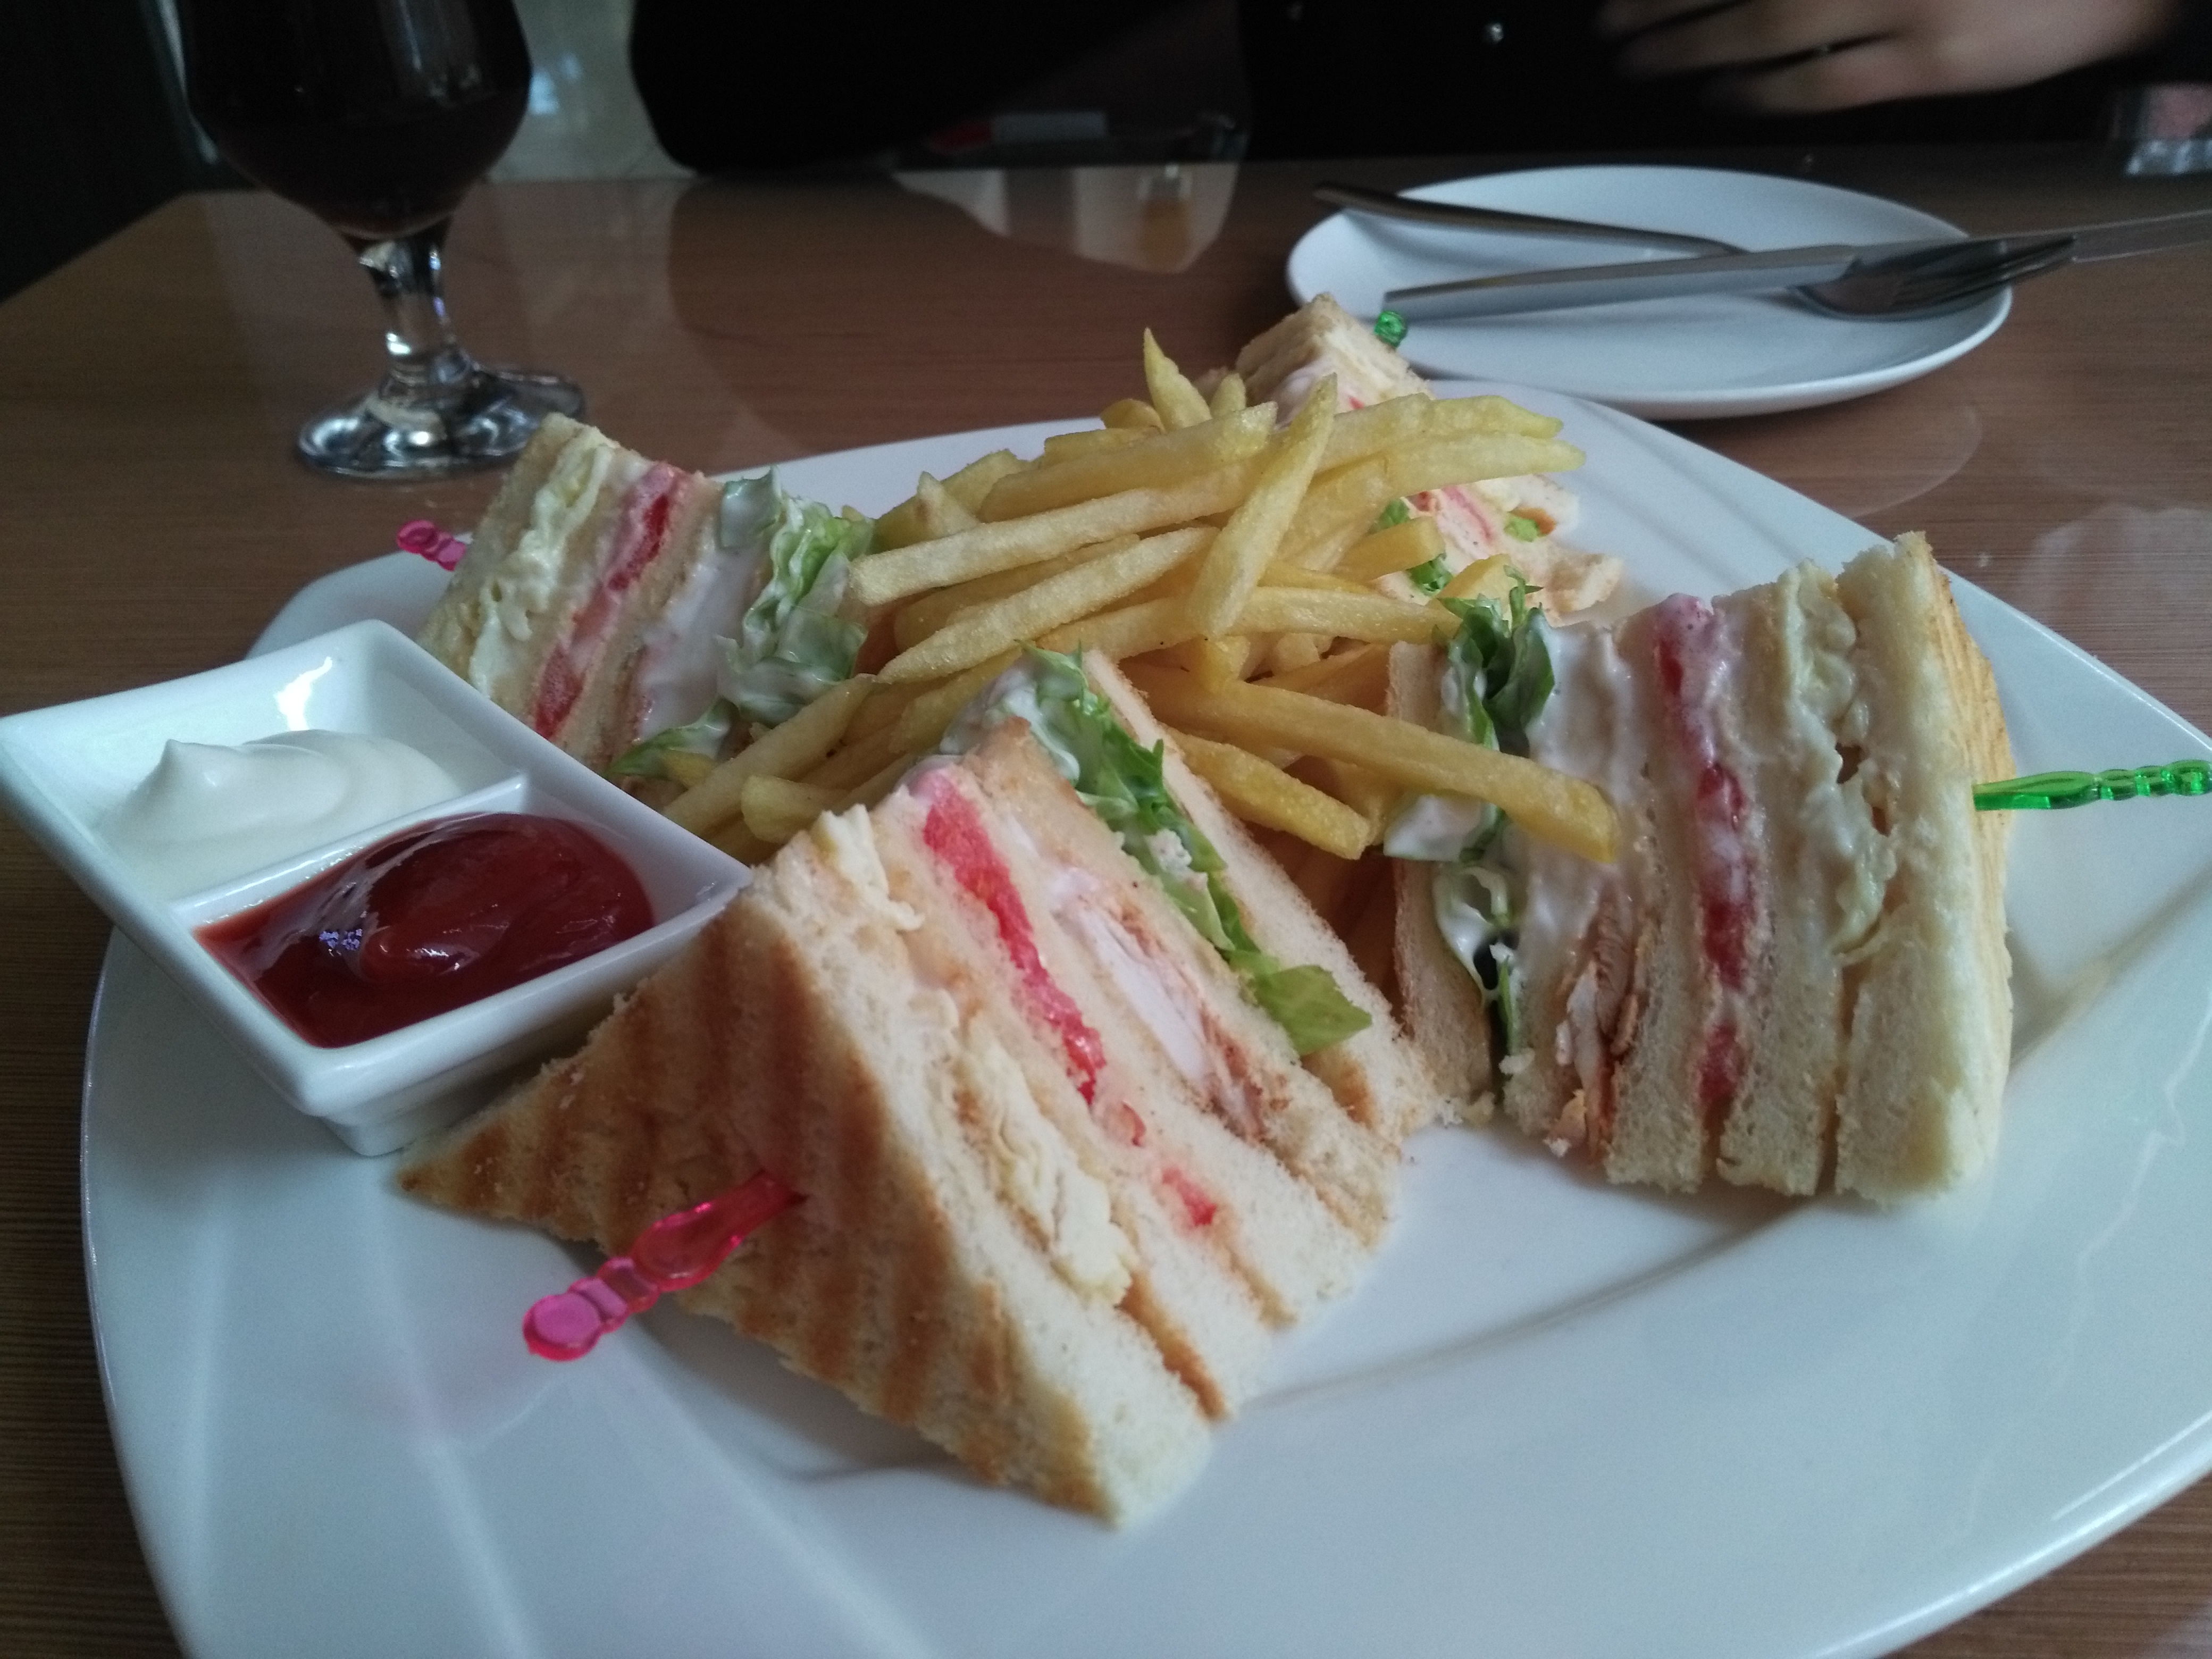 Club sandwich.